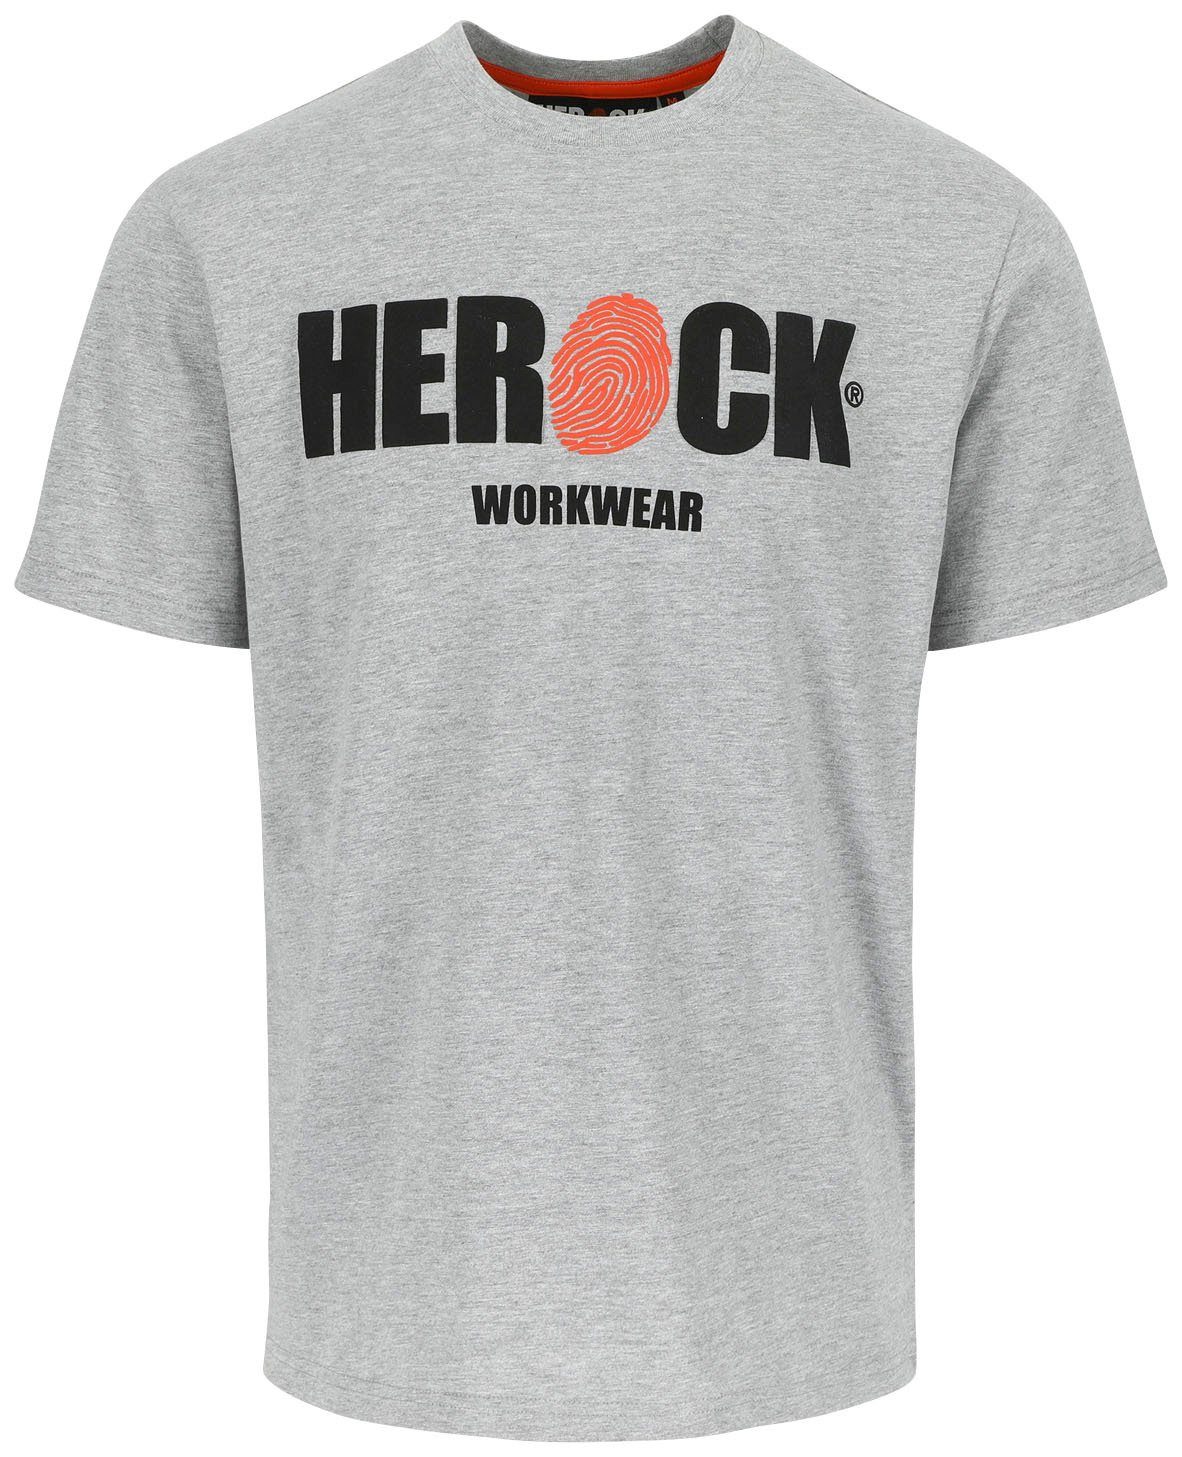 Tragegefühl T-Shirt mit Herock ENI Herock®-Aufdruck, angenehmes Baumwolle, Rundhals,